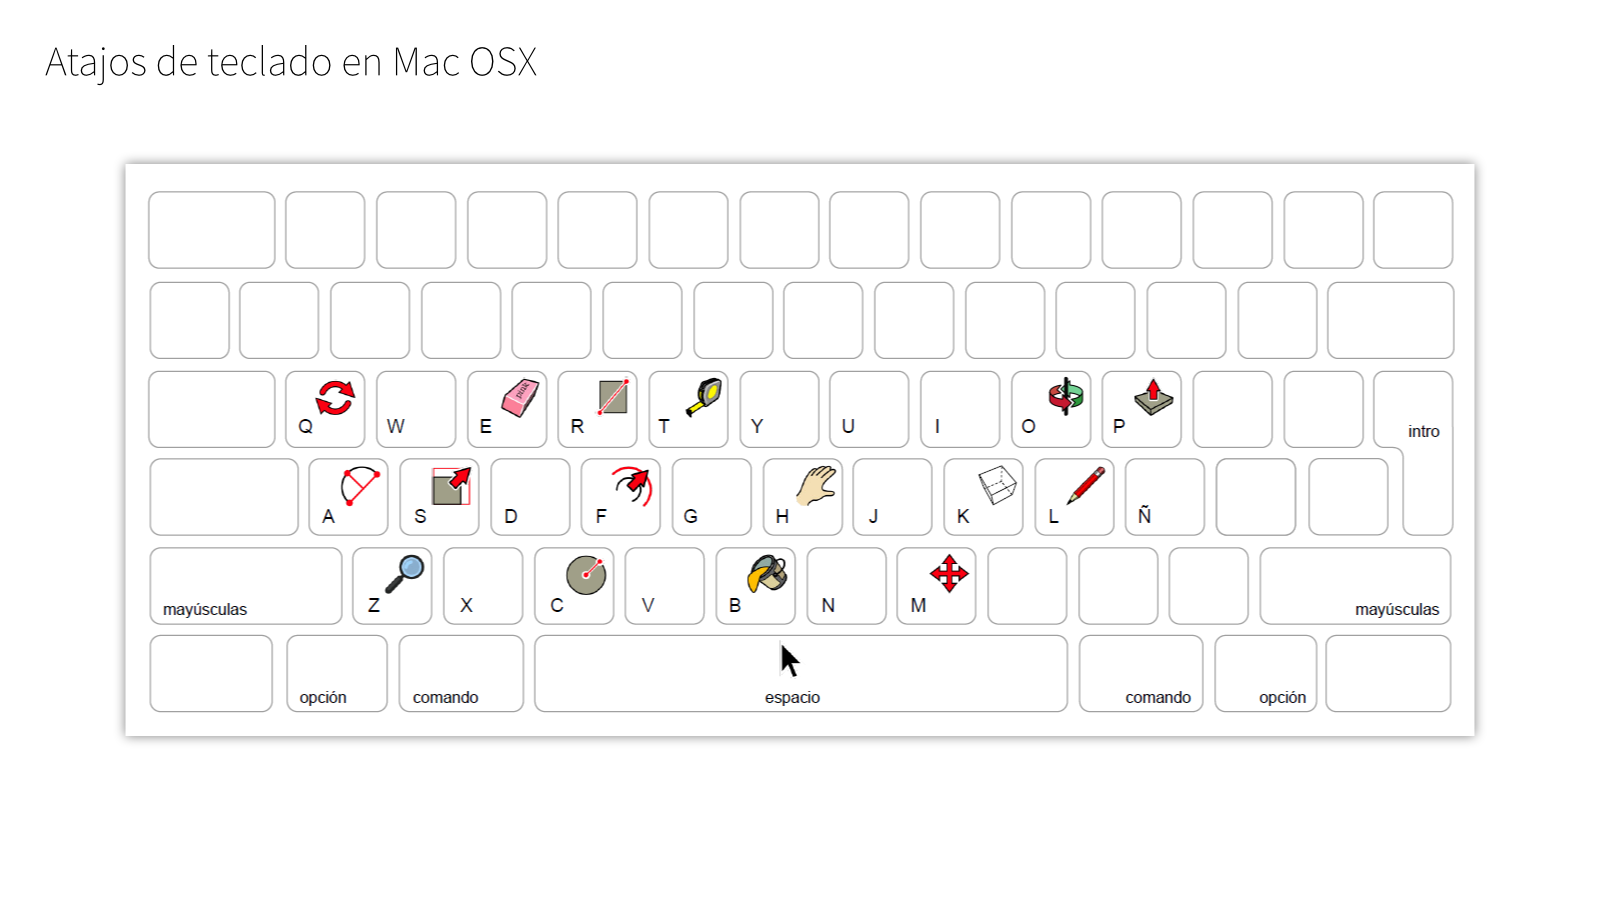 Atajos de teclado en Sketchup Mac OSX